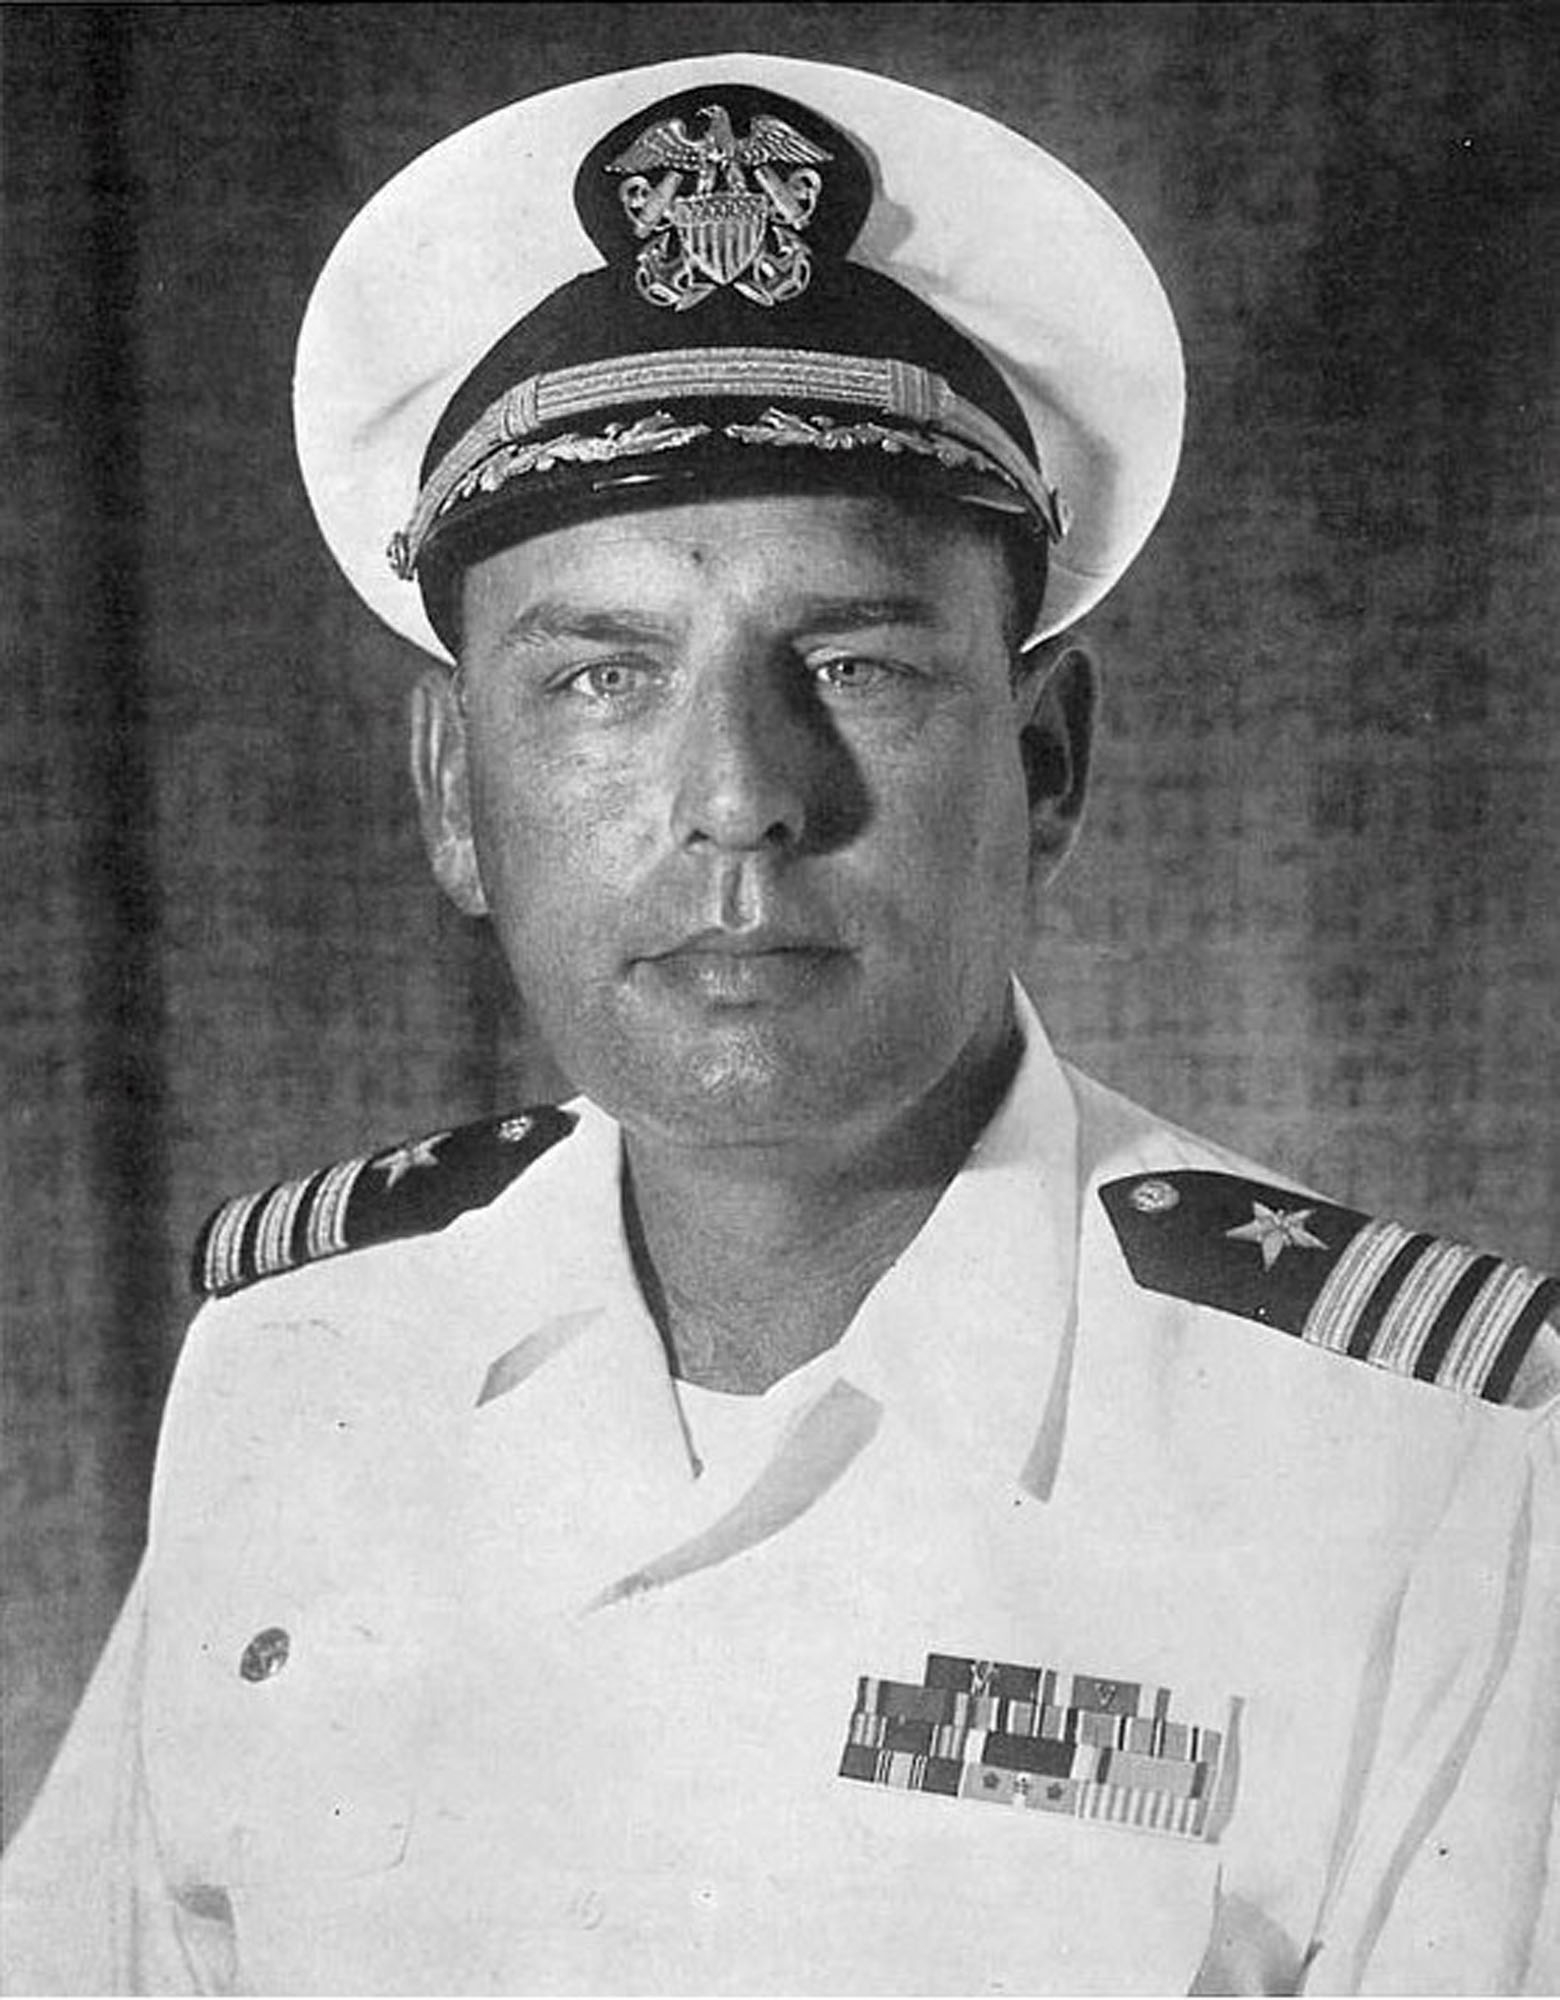 Capt. Charles P. Tesh, U.S. Navy Fellow 1969–70